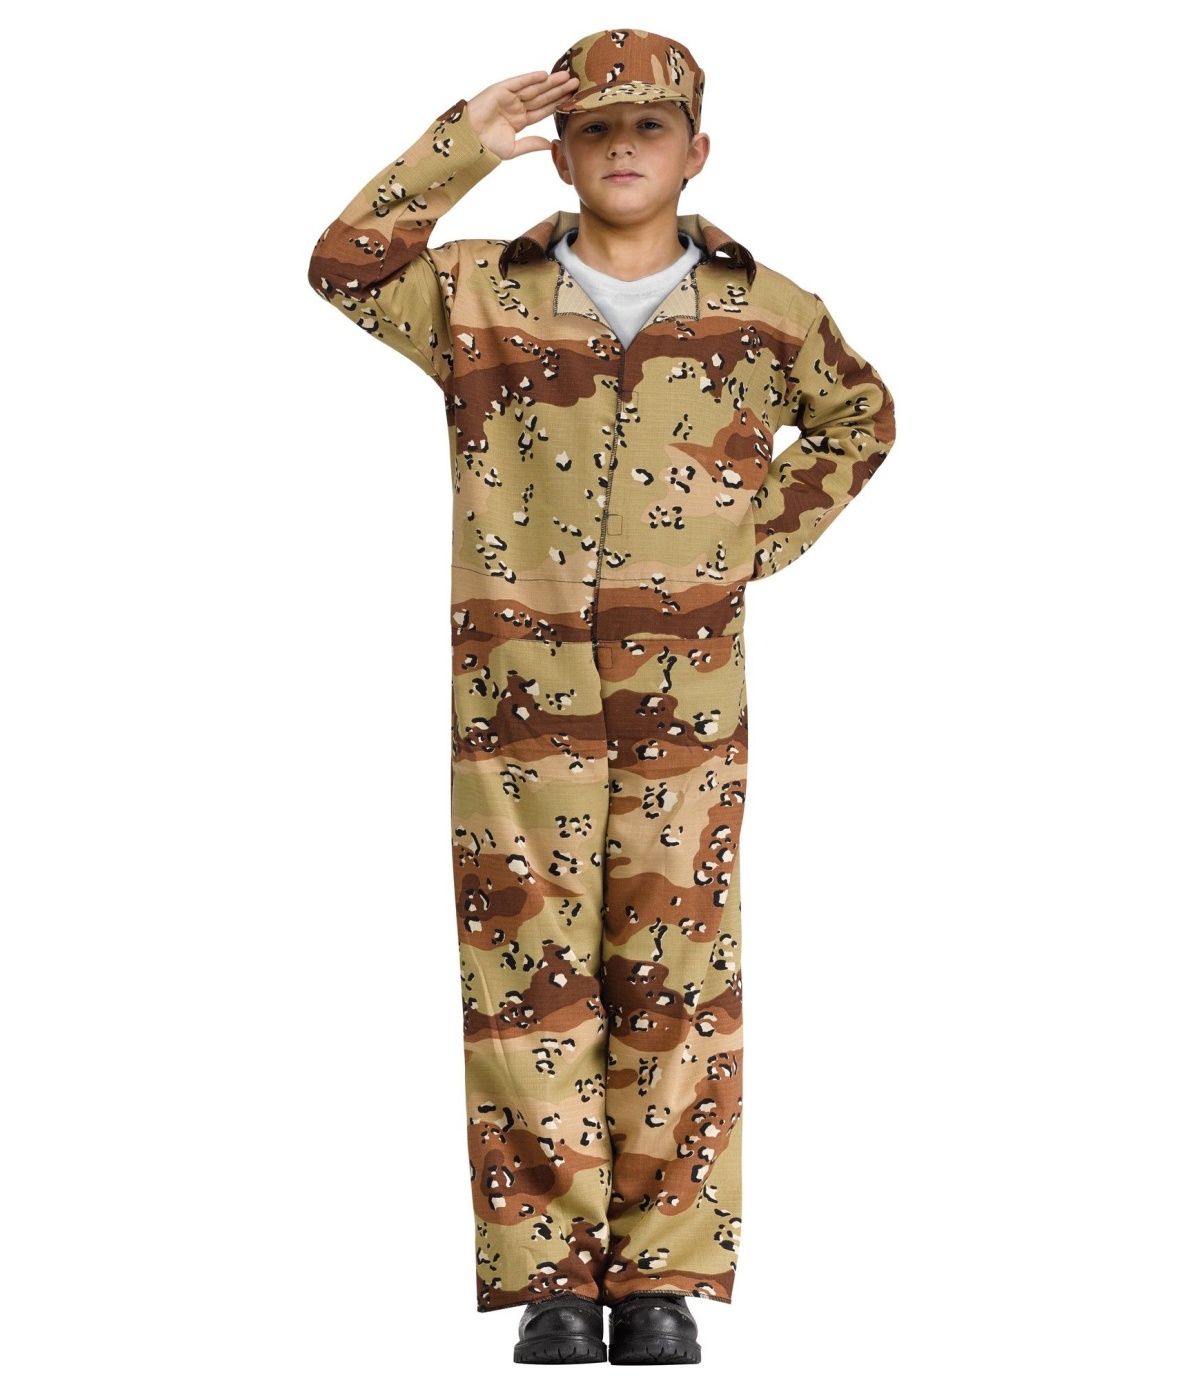 Desert Soldier Boys Costume